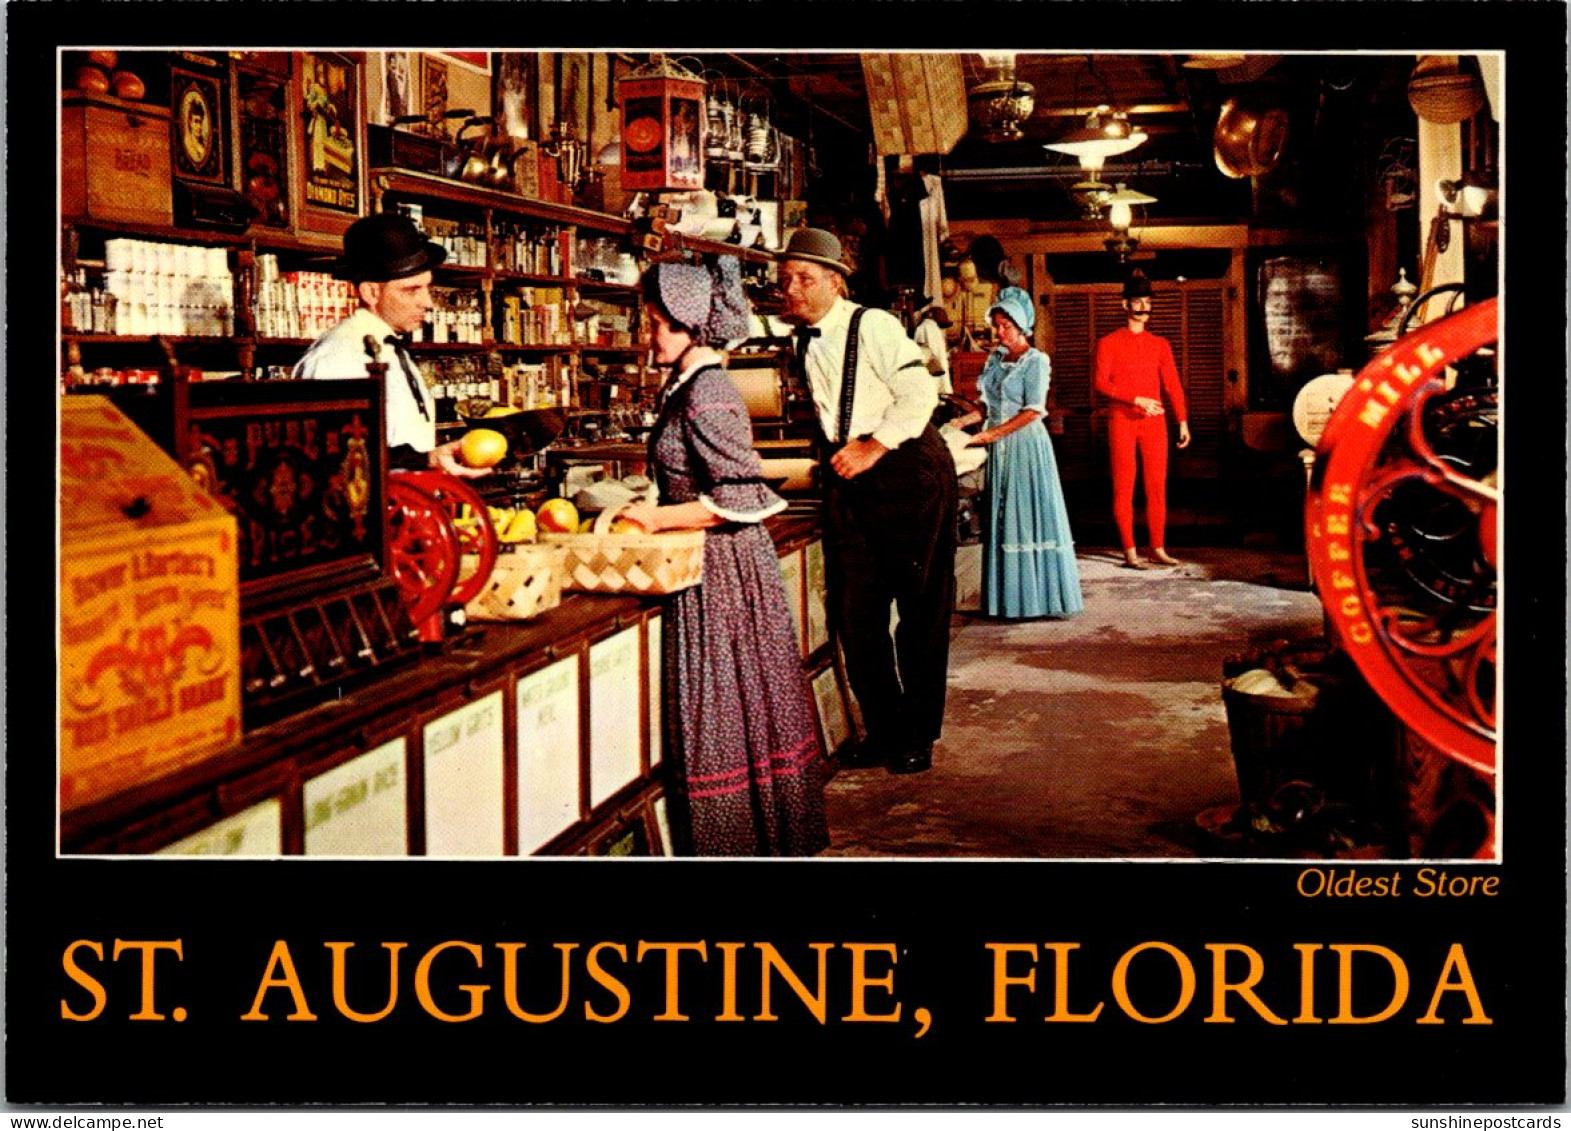 Florida St Augustine Oldest Store Interior - St Augustine